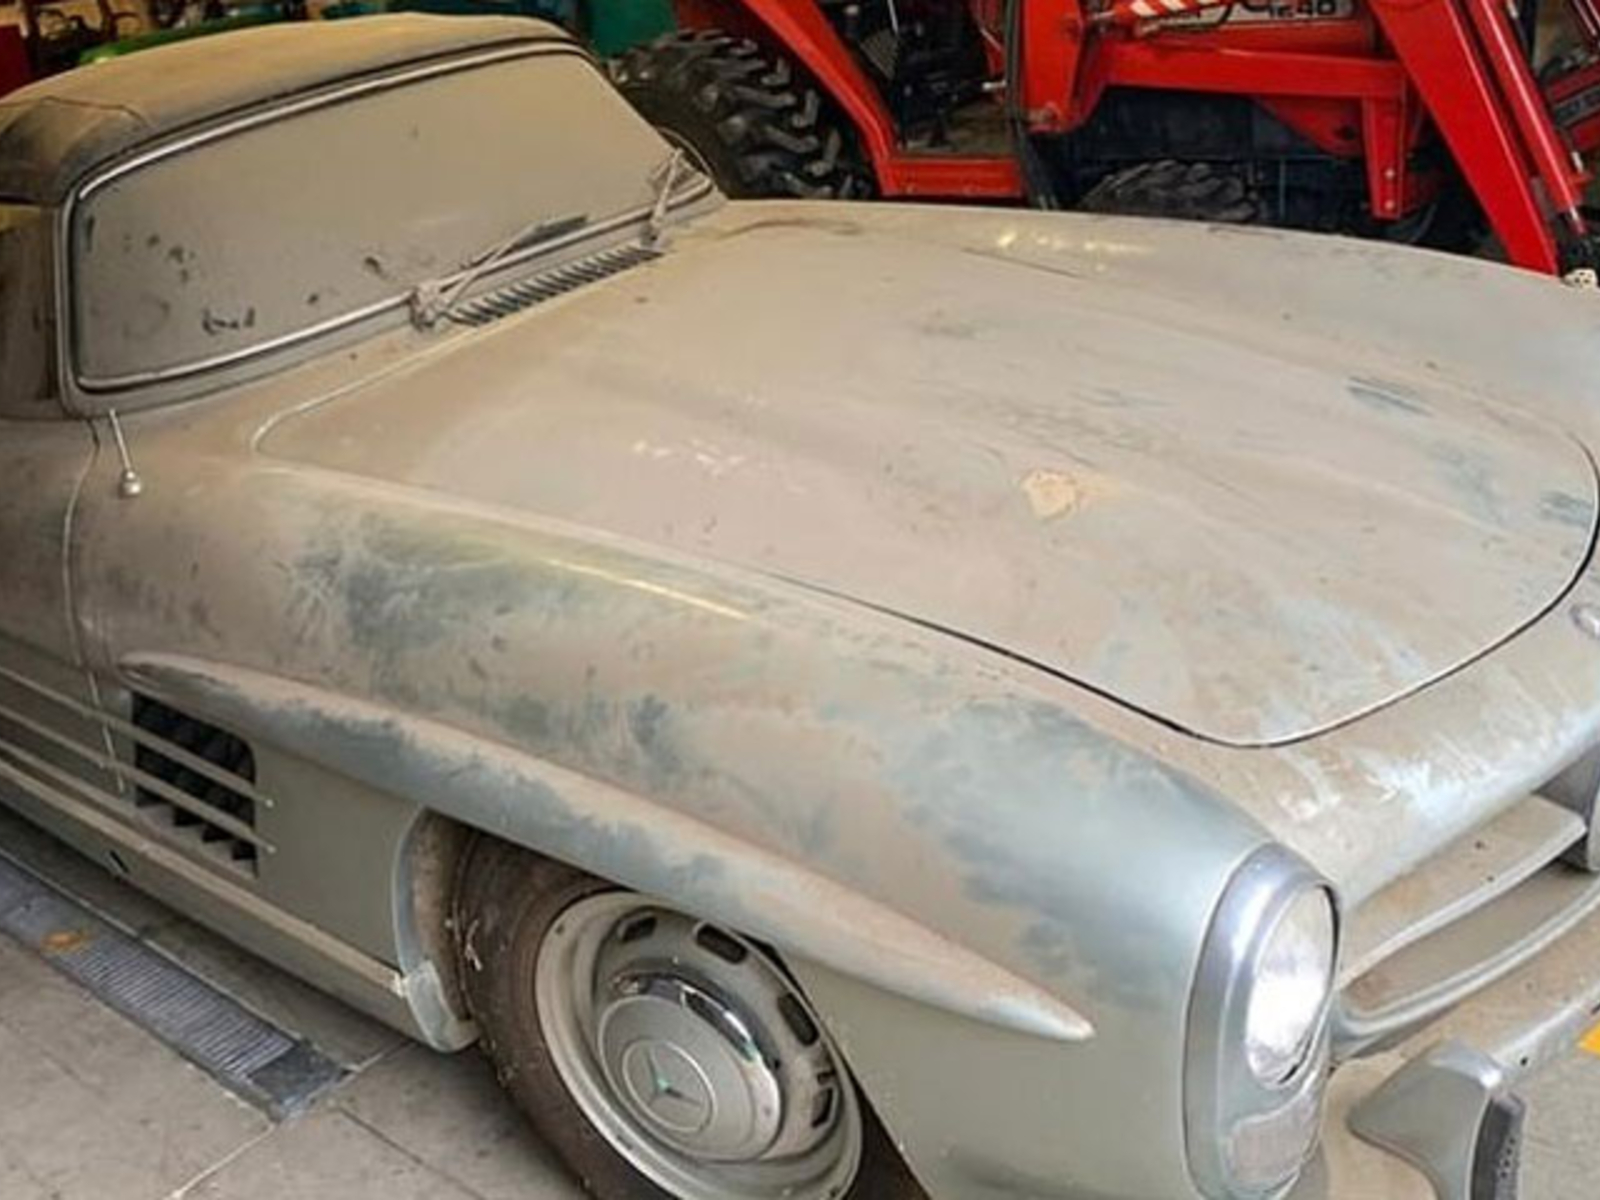 Garagenfund macht Finder zu Millionär - Mercedes-Oldtimer entdeckt - oe24.at